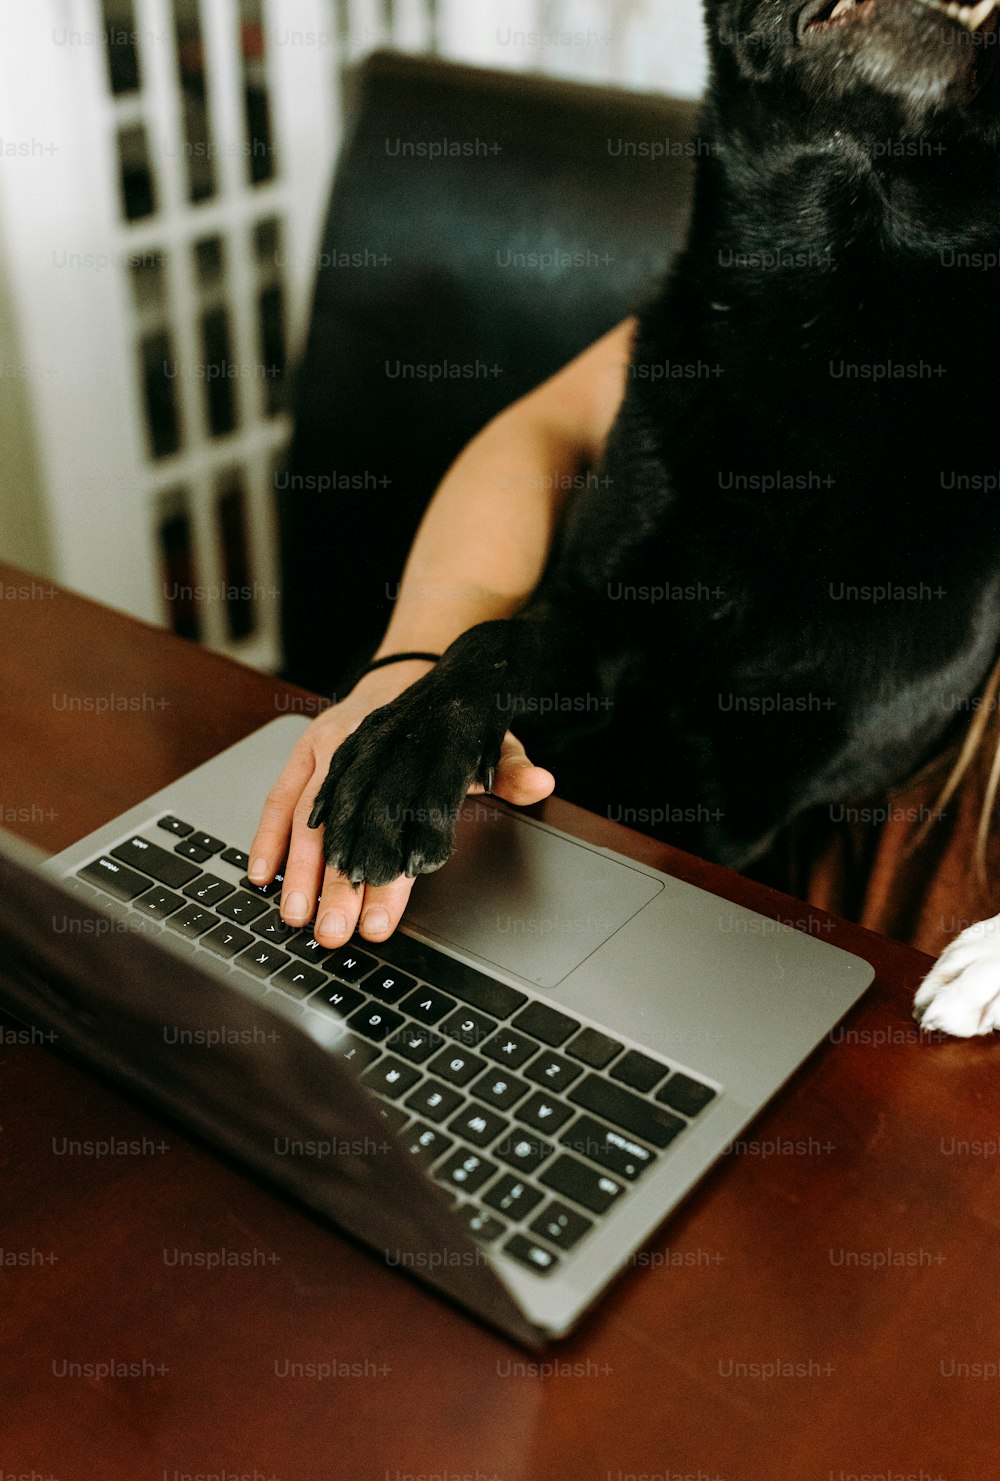 eine Person mit einem Hund auf dem Schoß mit einem Laptop